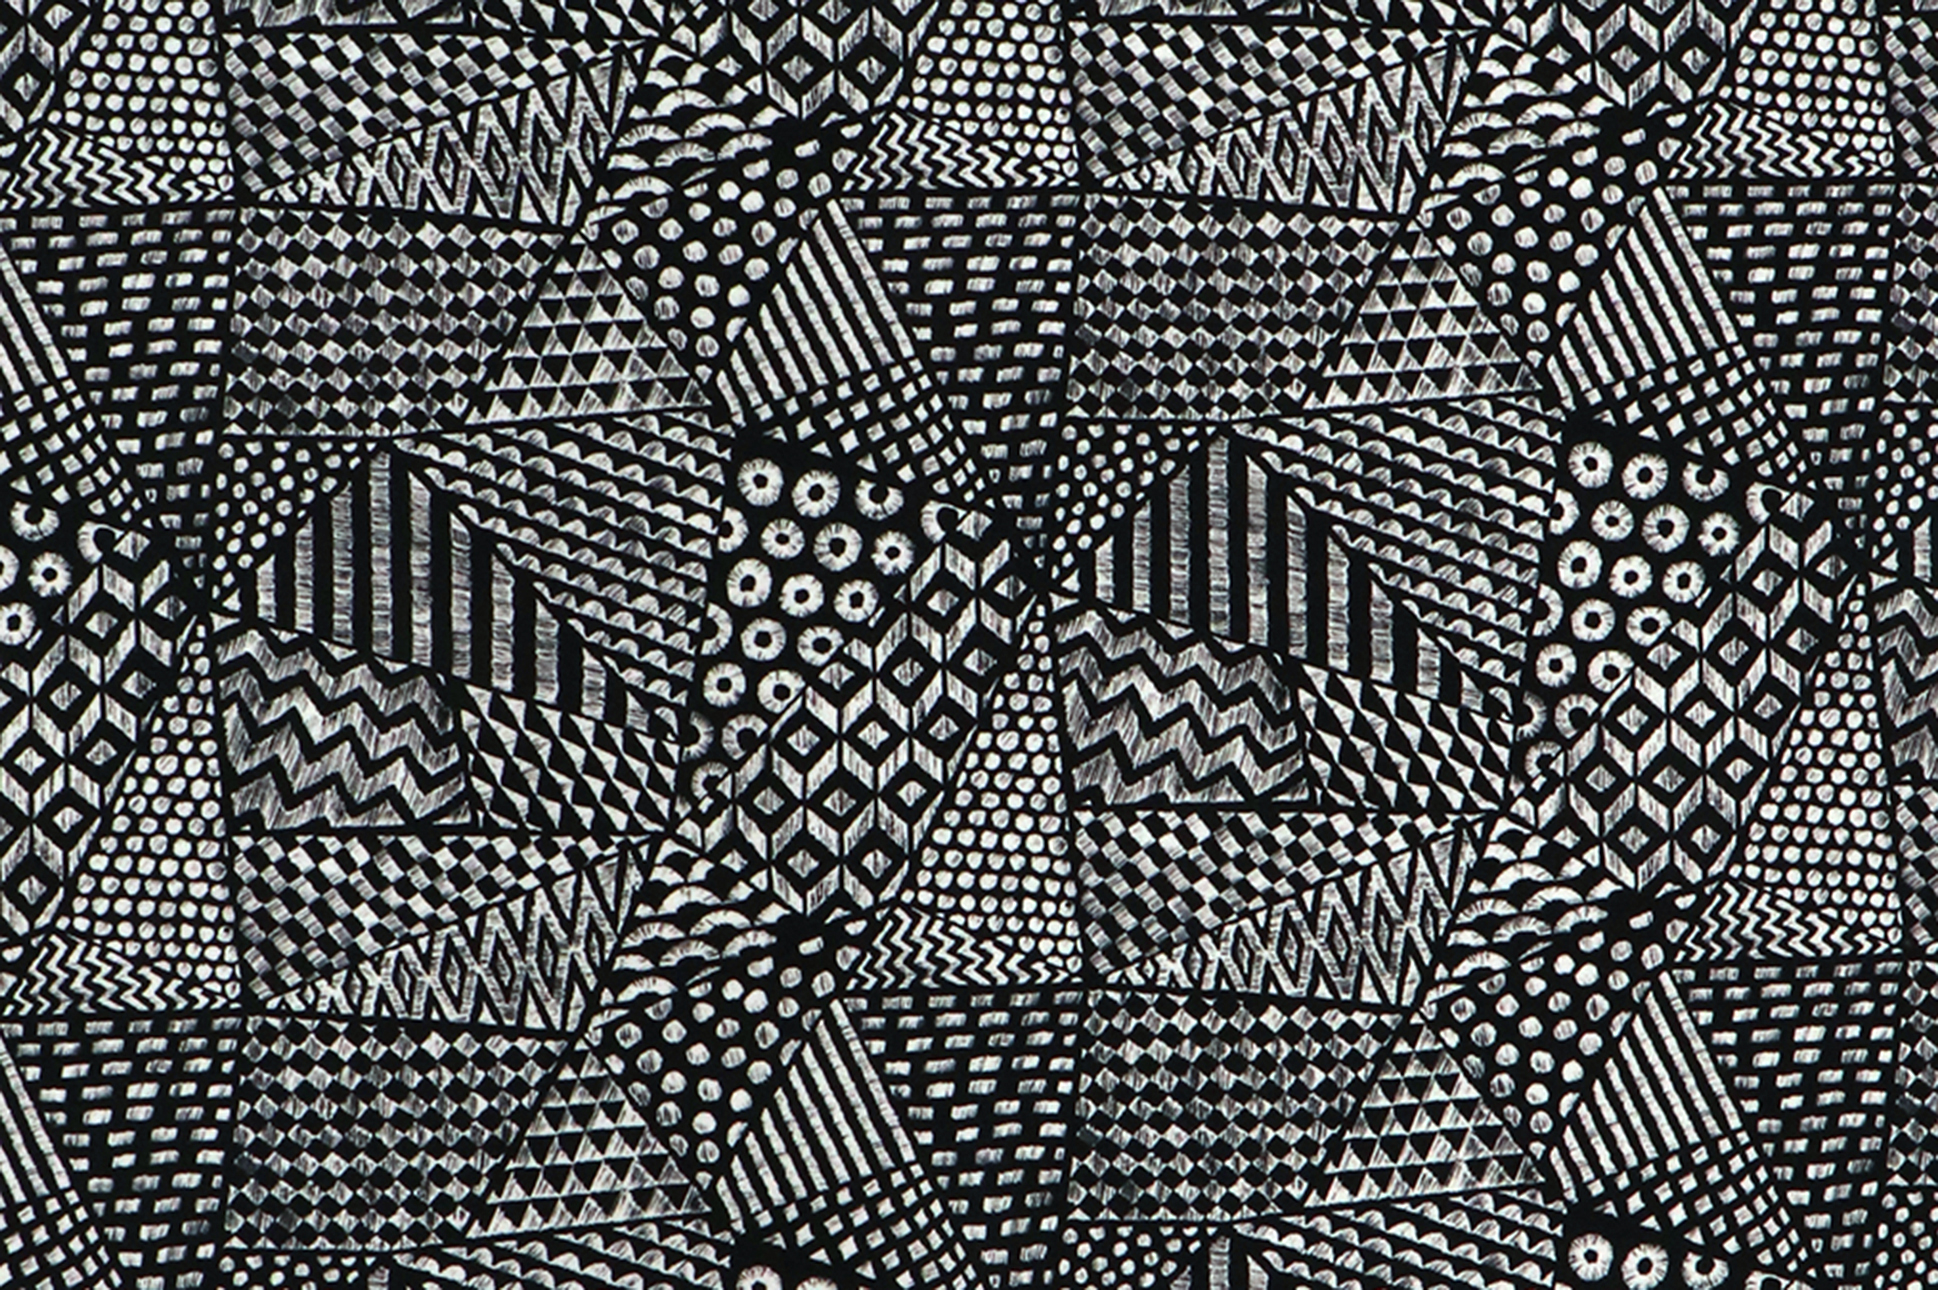 French Terry, Fräulein von Julie, geometrische Muster in schwarz weiß